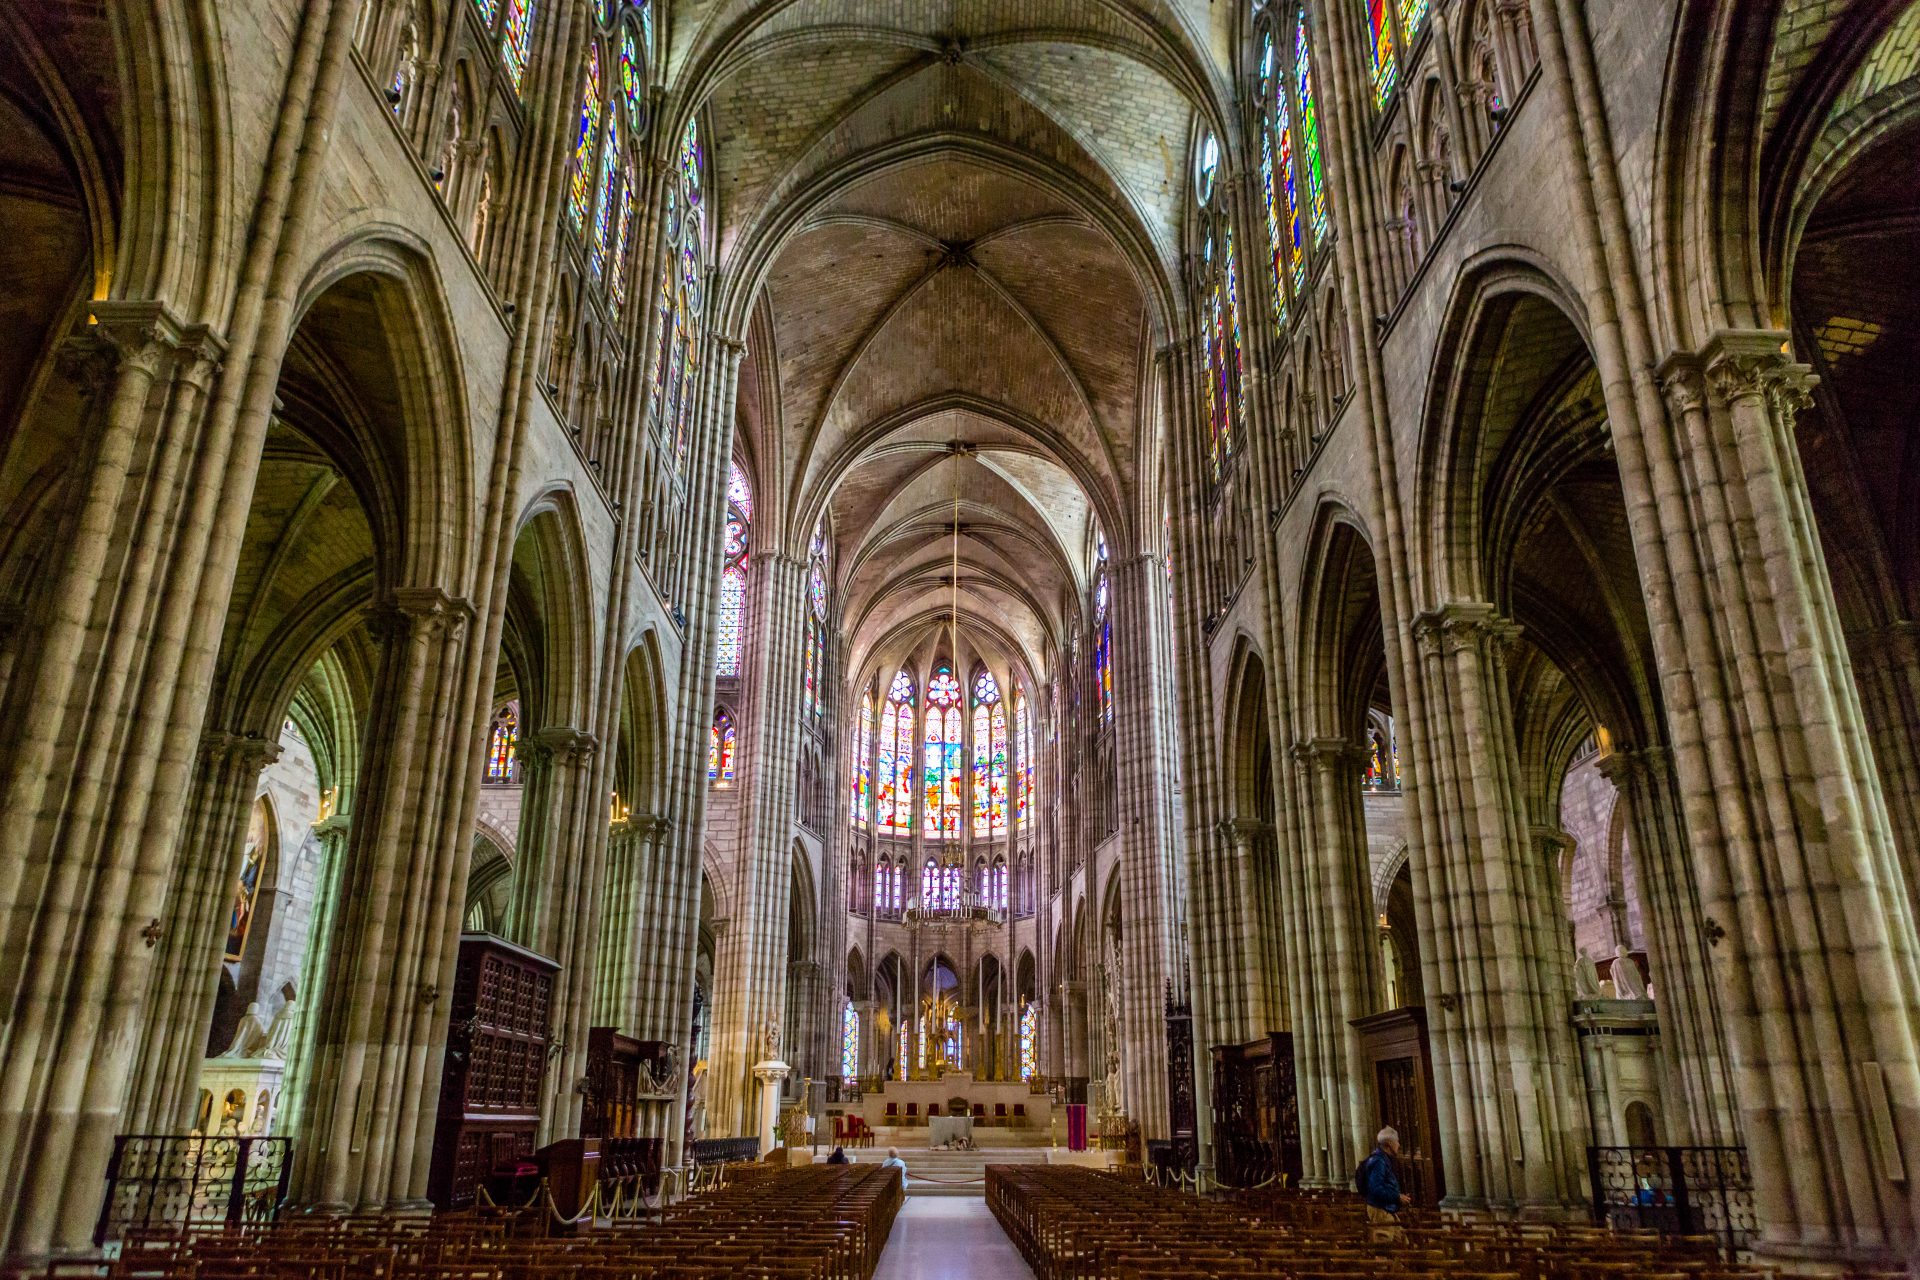 Inspirado na basílica de Saint-Denis